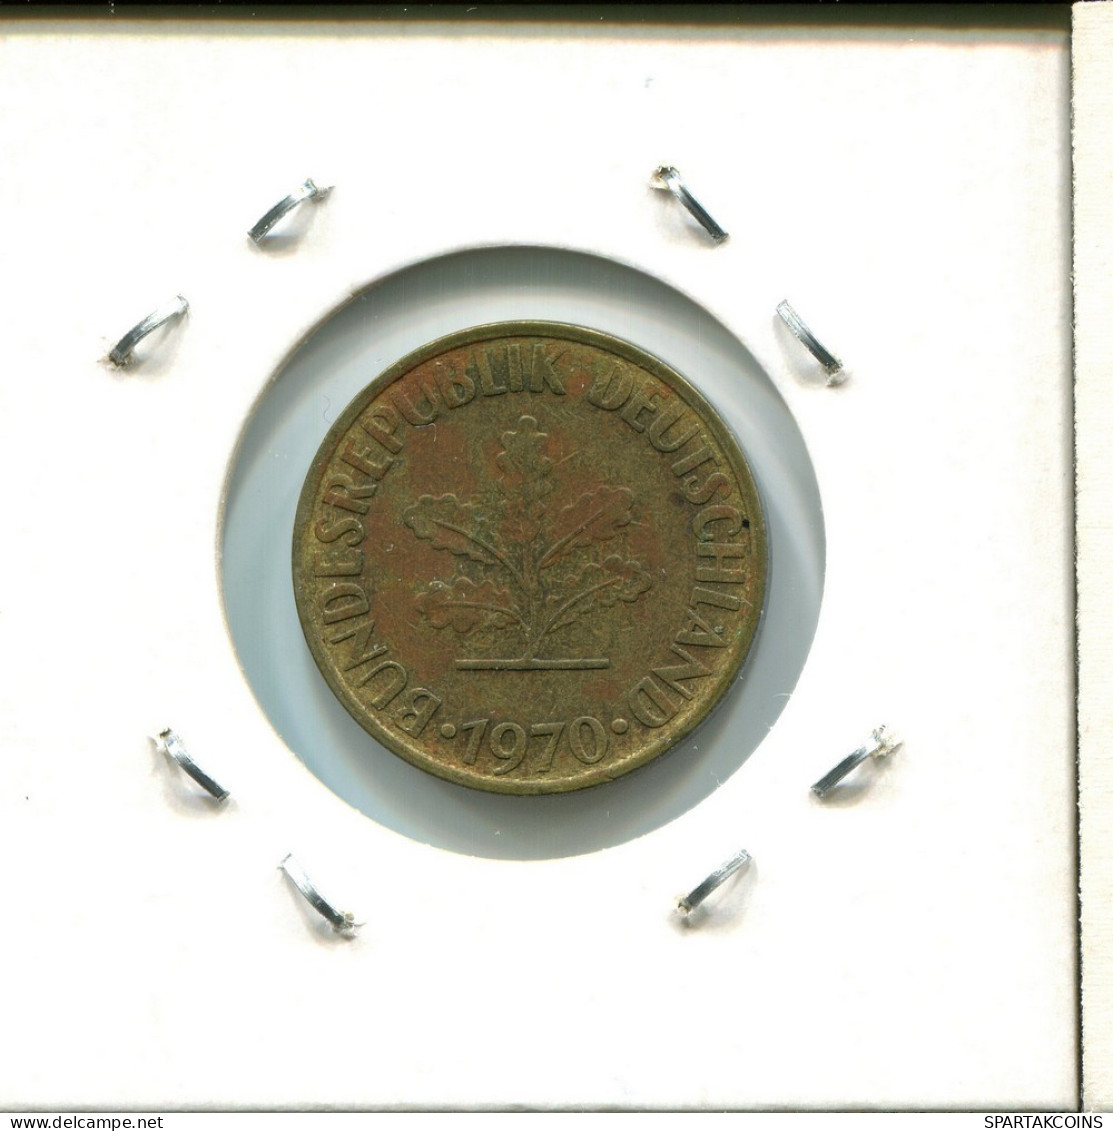 10 PFENNIG 1970 D BRD ALEMANIA Moneda GERMANY #AU727.E.A - 10 Pfennig